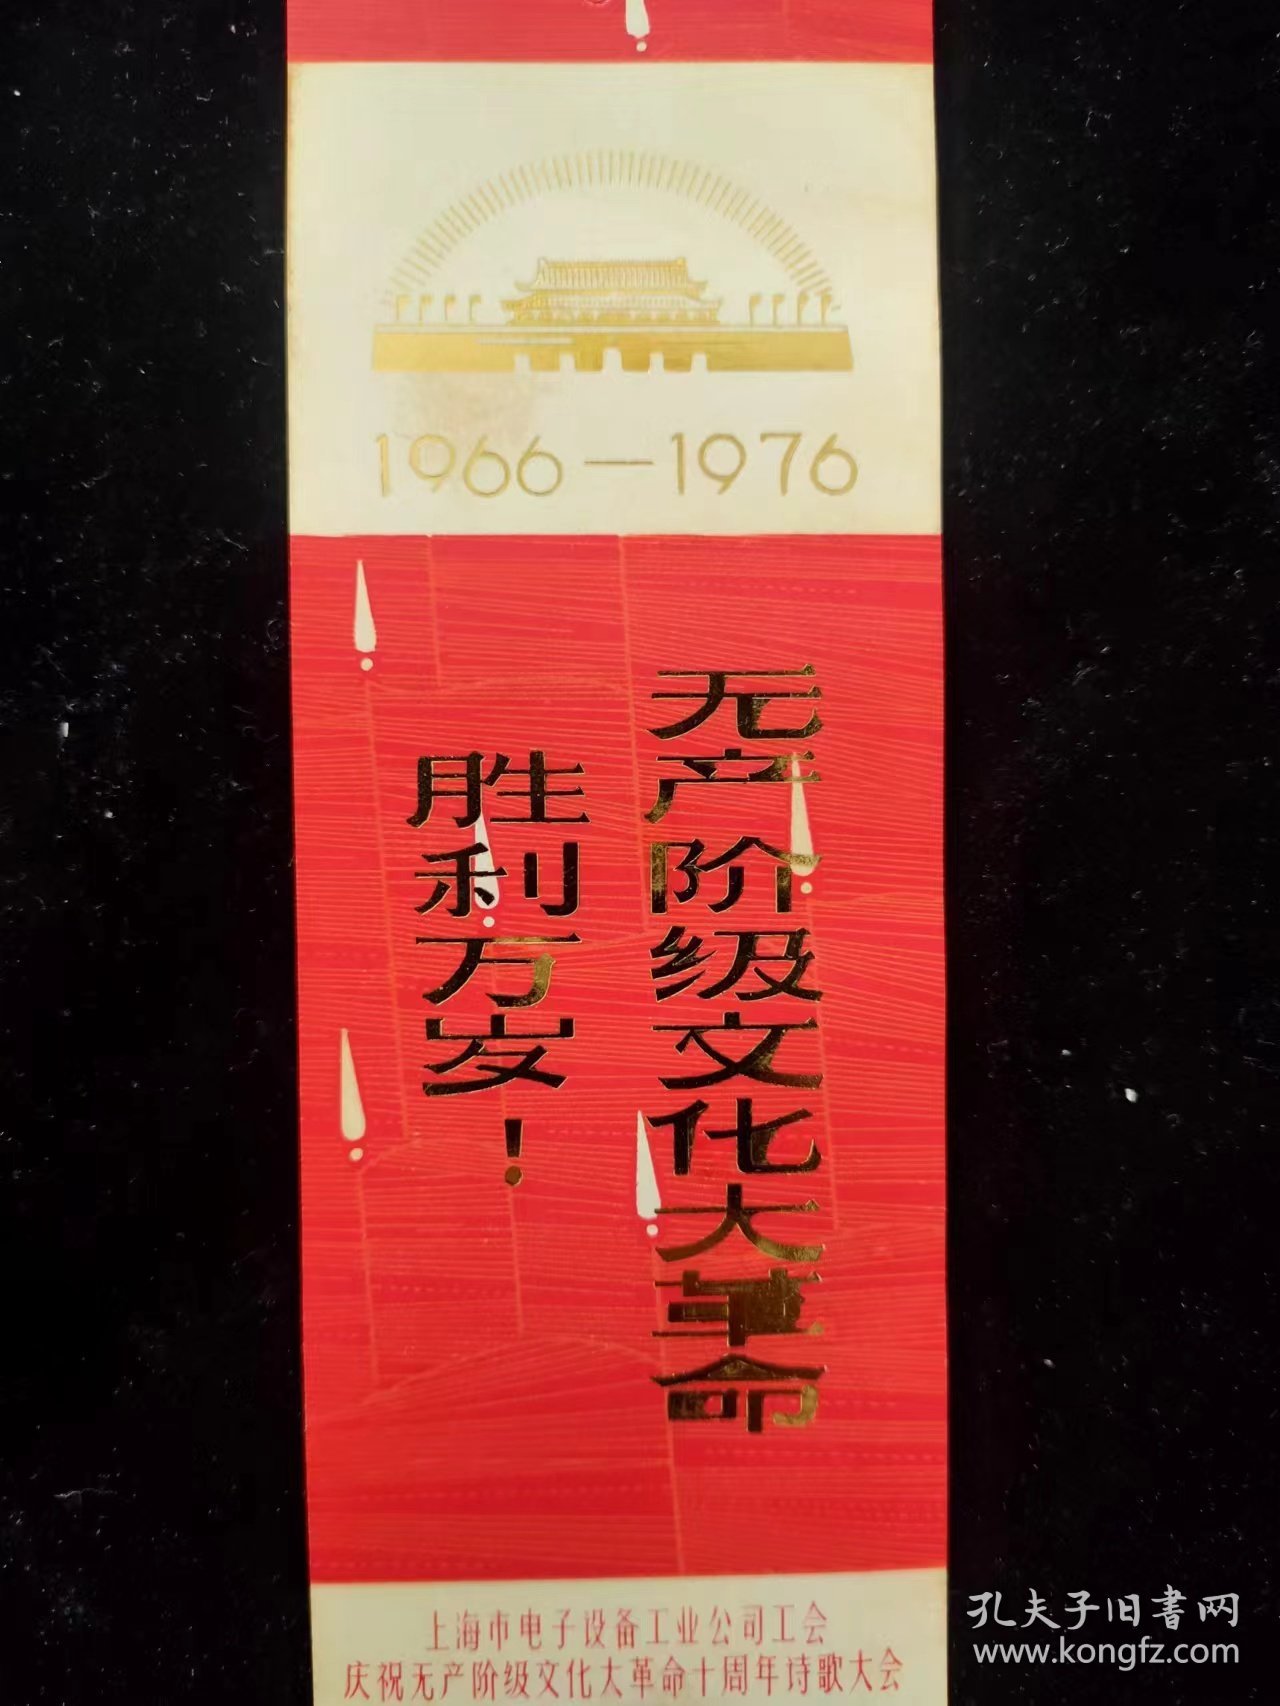 1966-1976，无产阶级文化大革命胜利万岁！书签